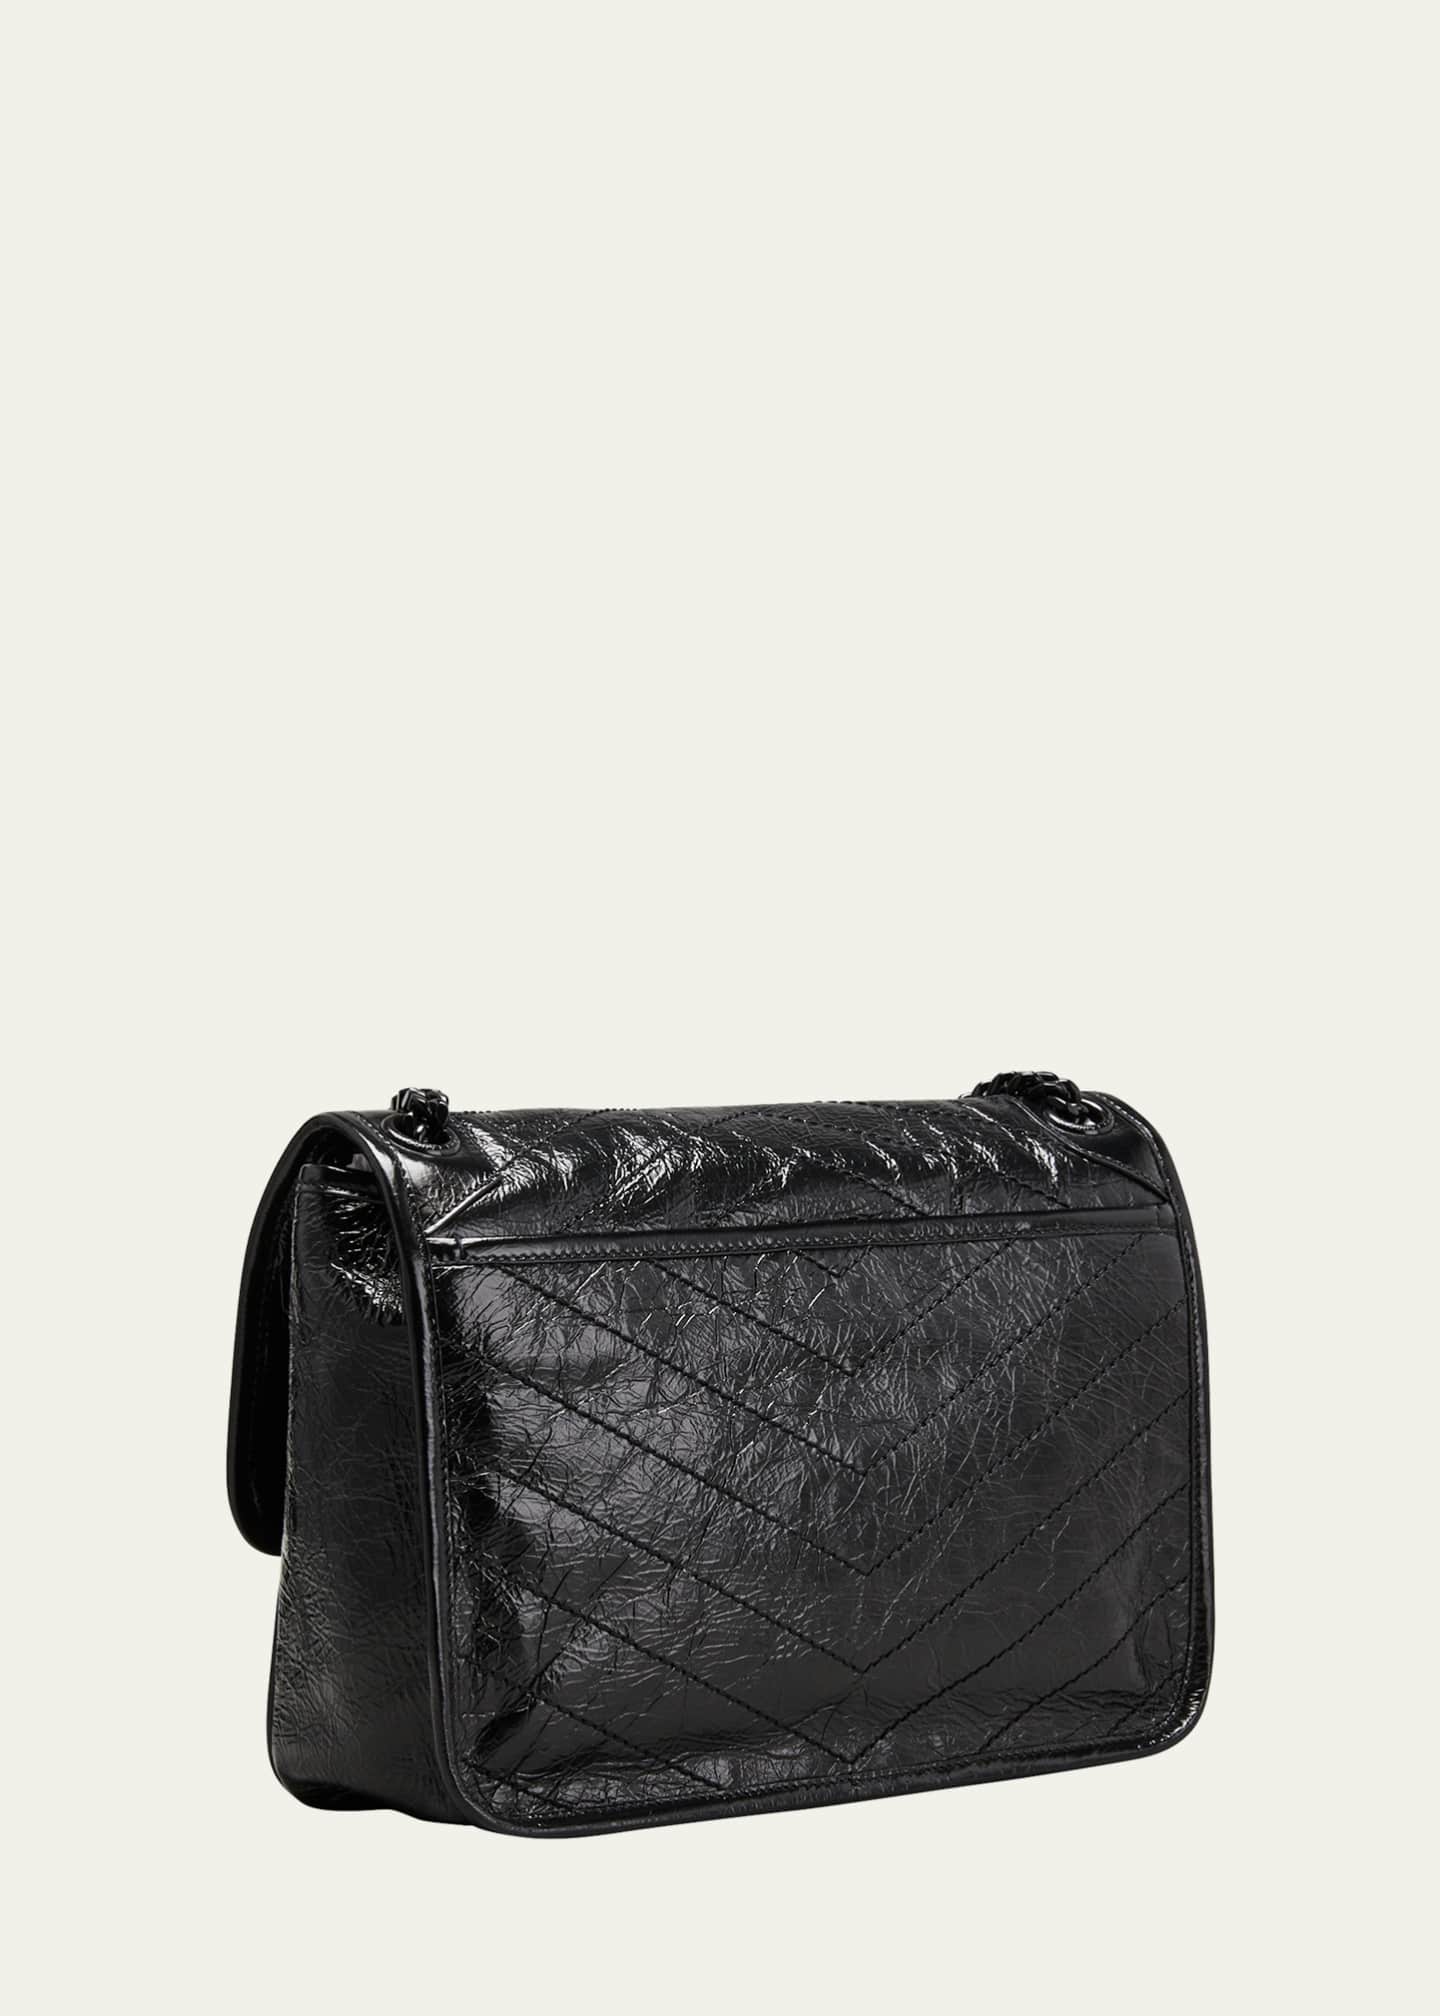 Saint Laurent Niki Medium Flap YSL Shoulder Bag in Crinkled Leather Image 3 of 5